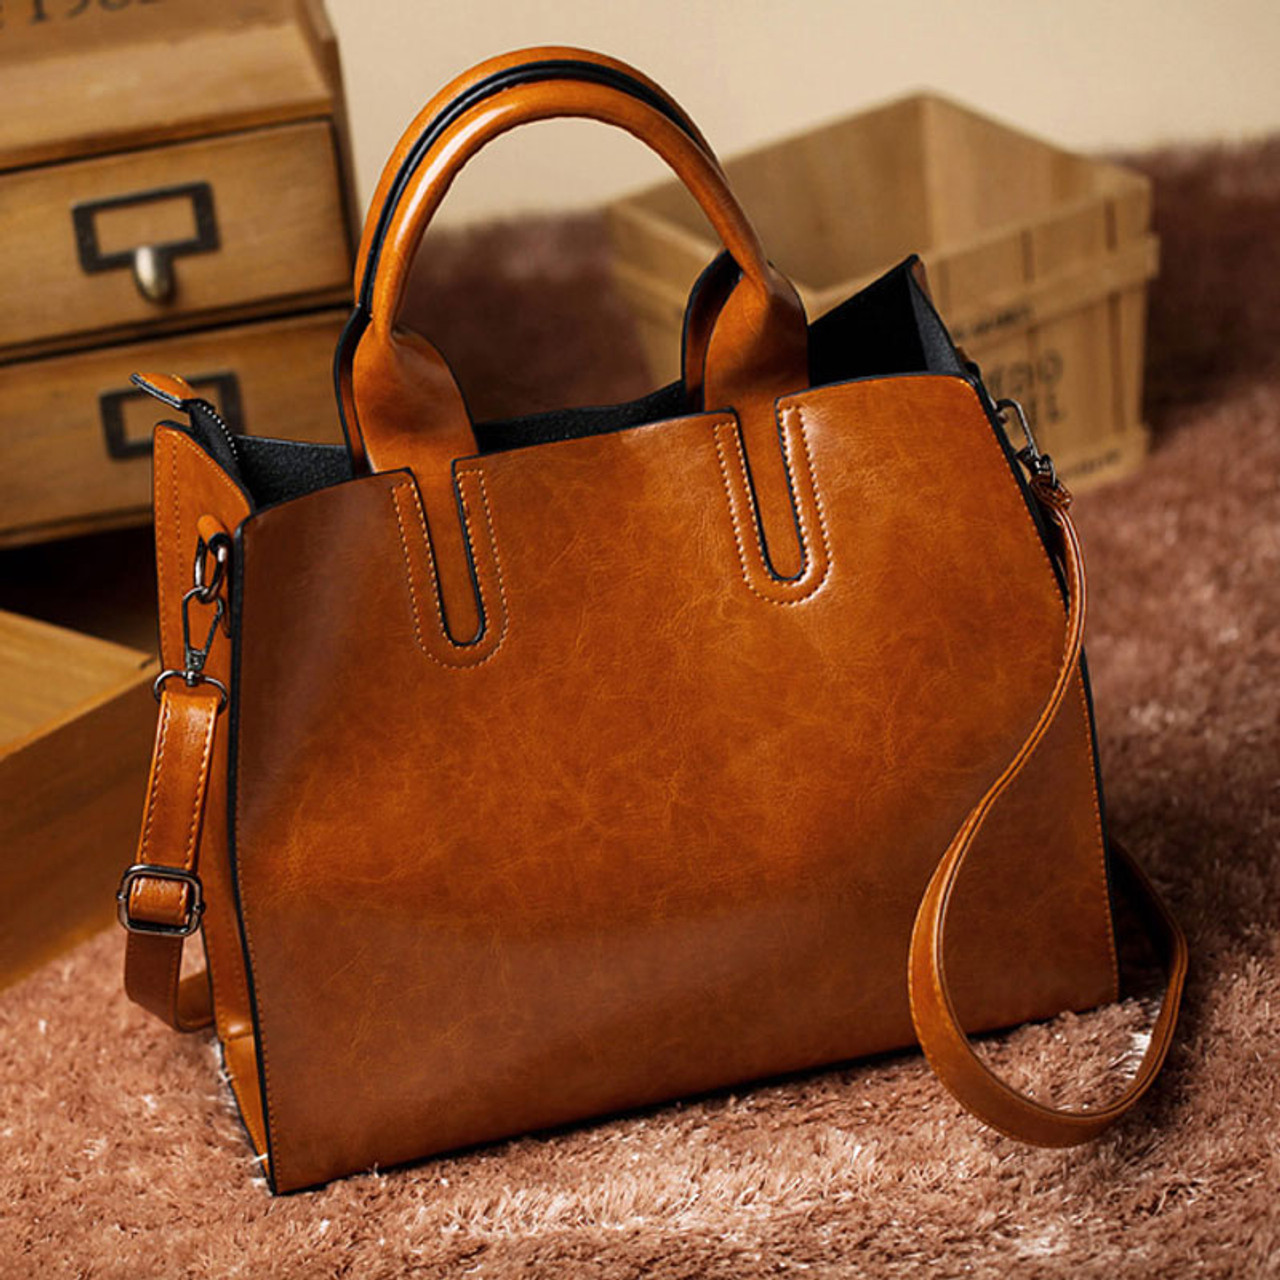 large leather handbags on sale